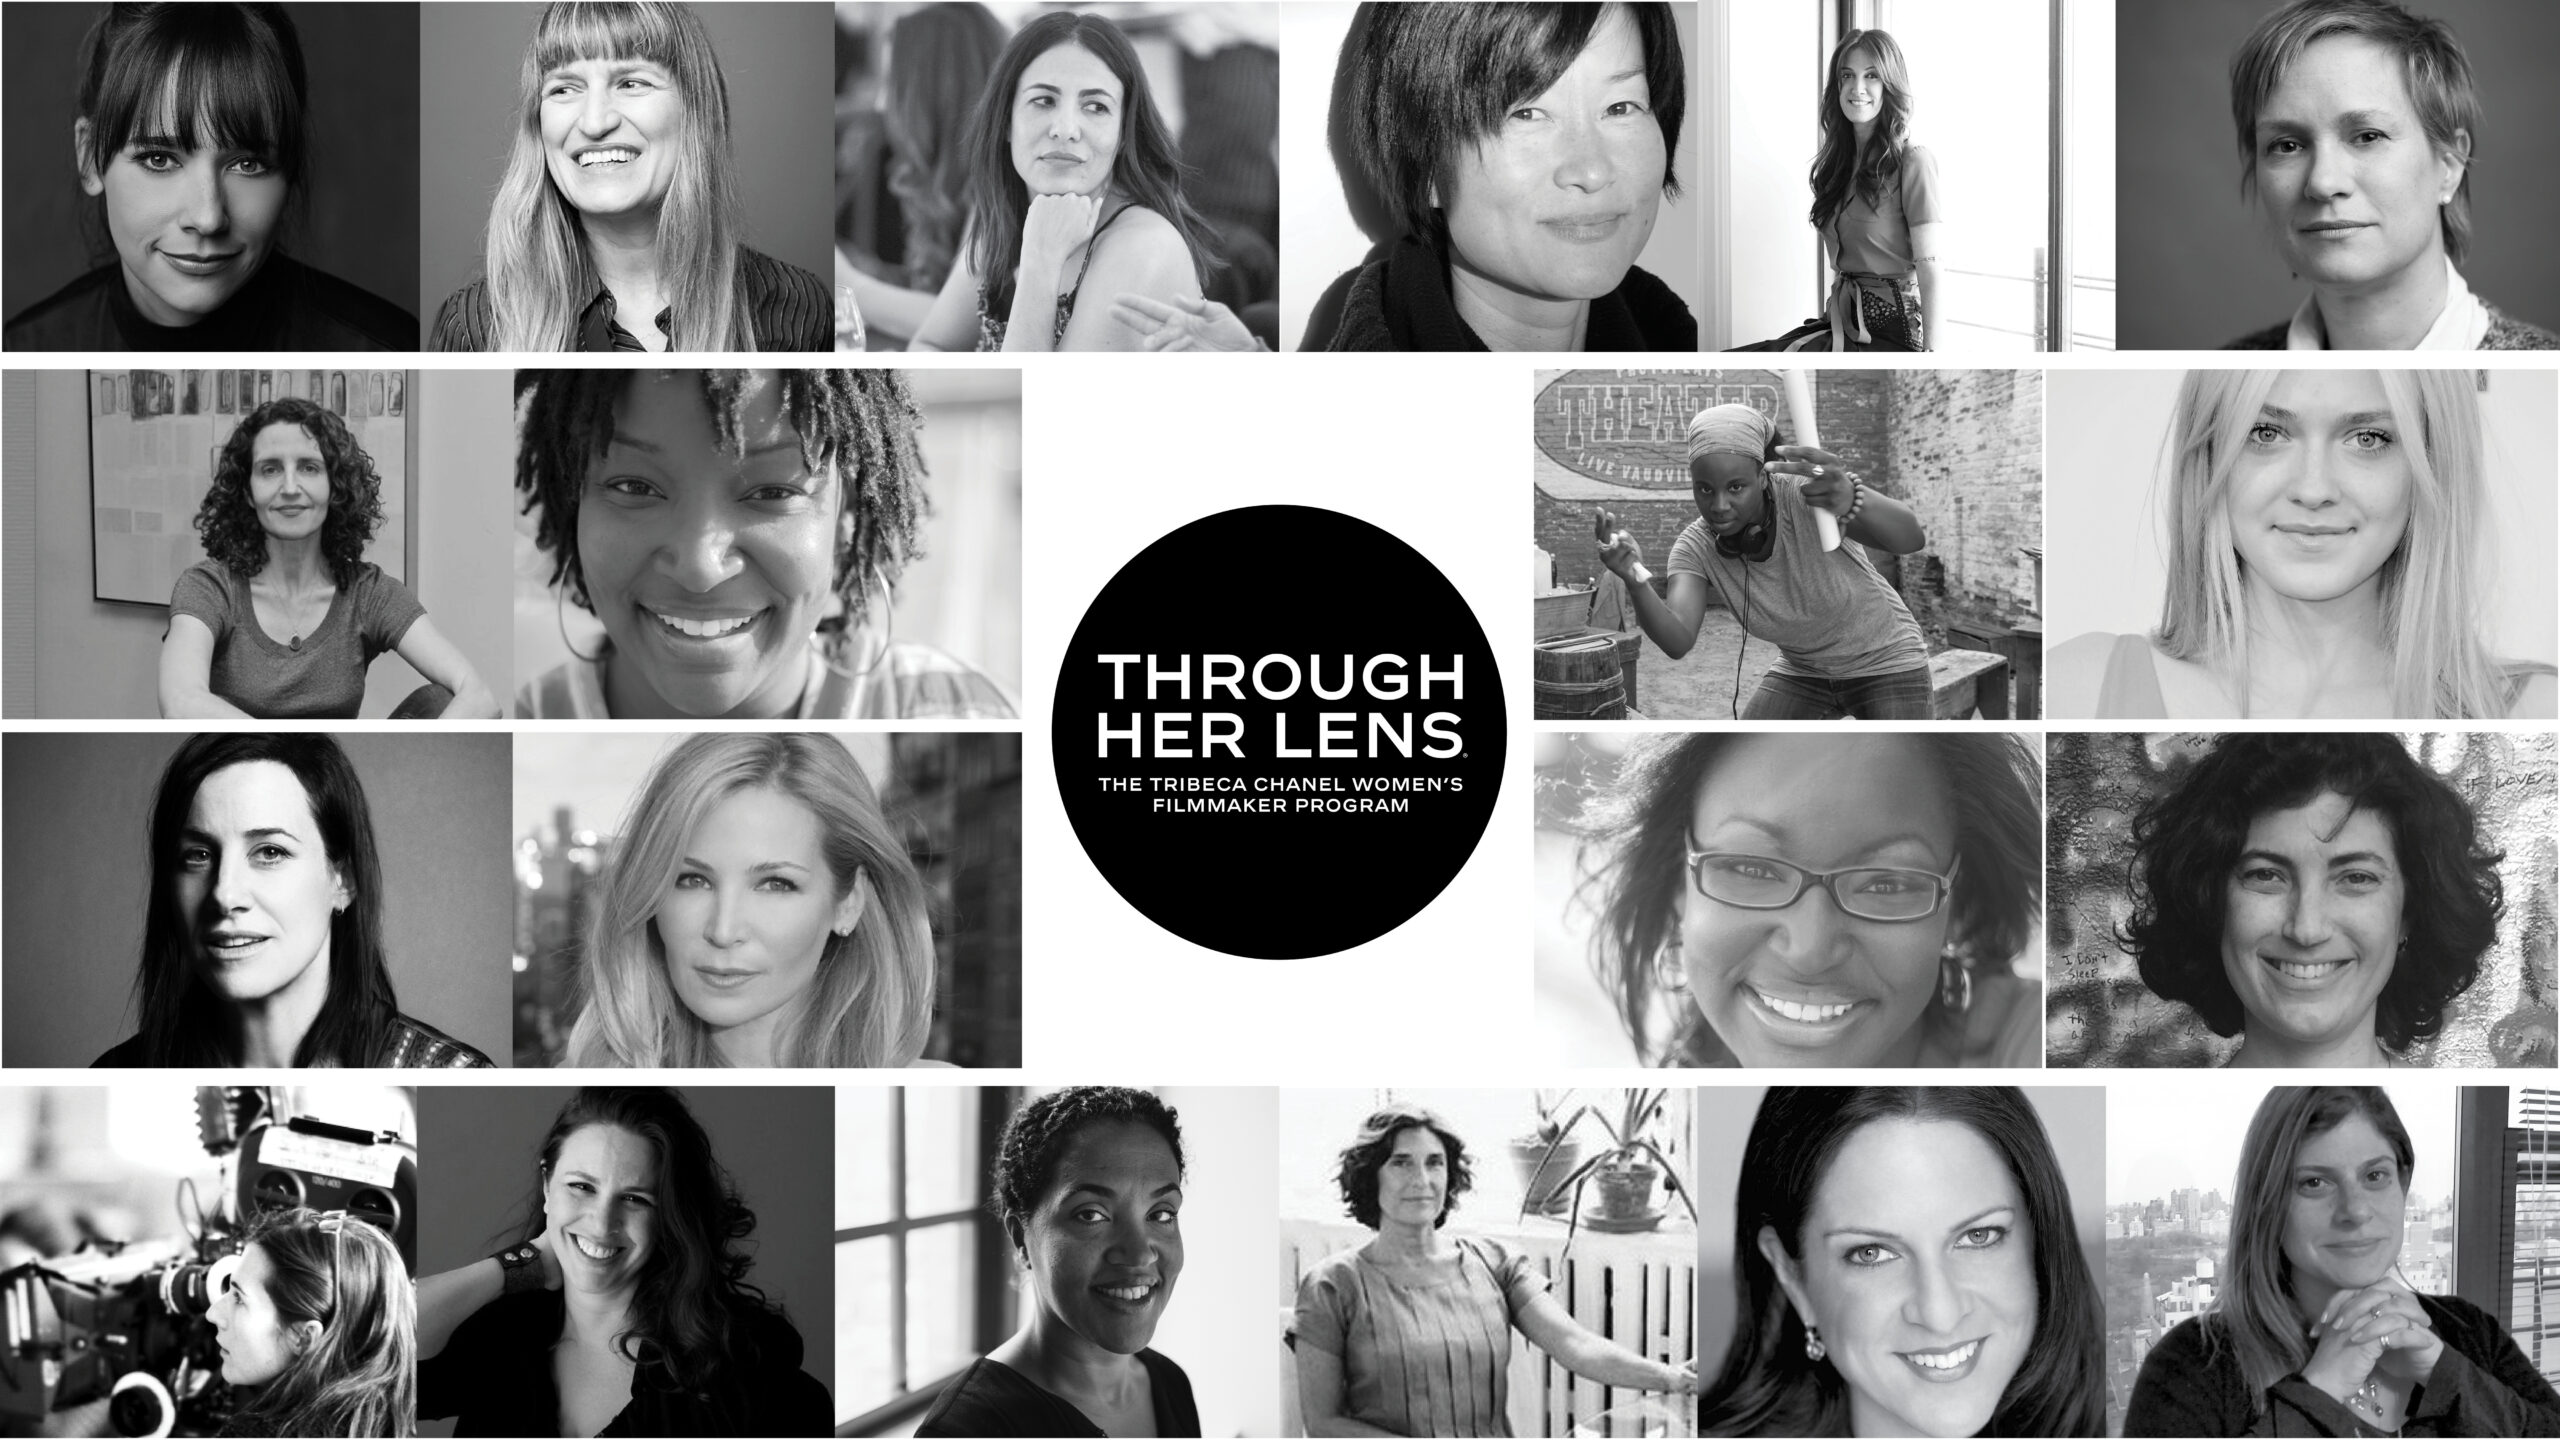 Through Her Lens: The Tribeca Chanel Women’s Filmmaker Program. Photo provided.